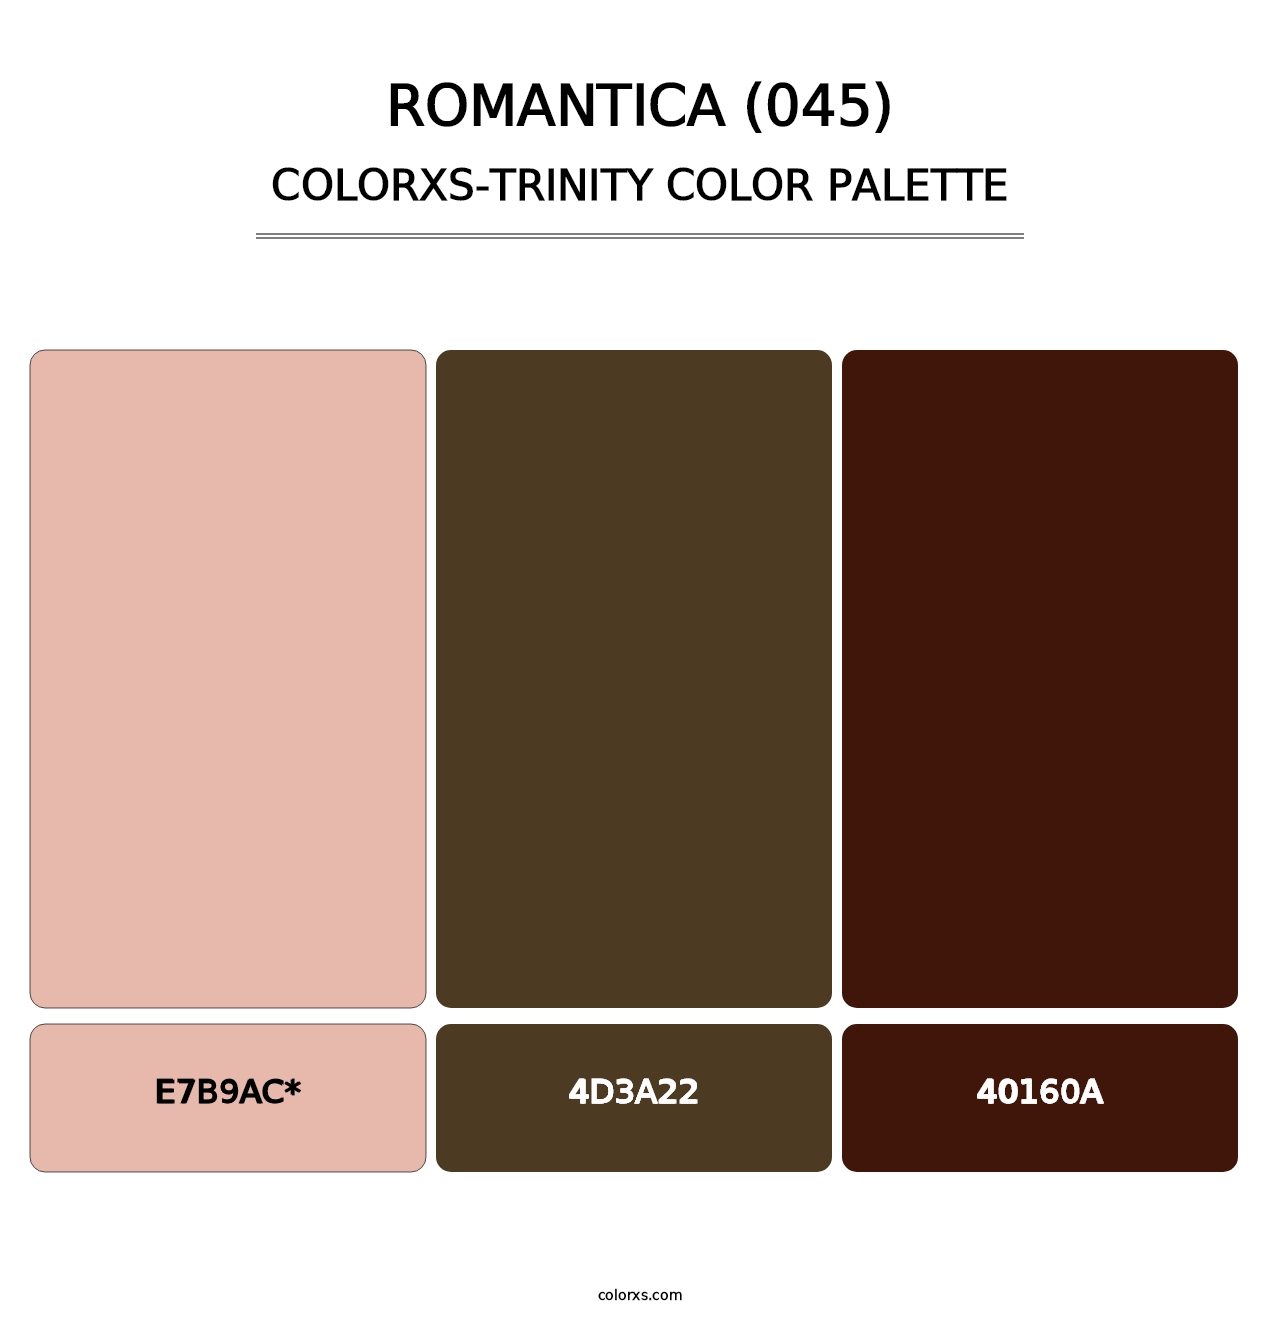 Romantica (045) - Colorxs Trinity Palette